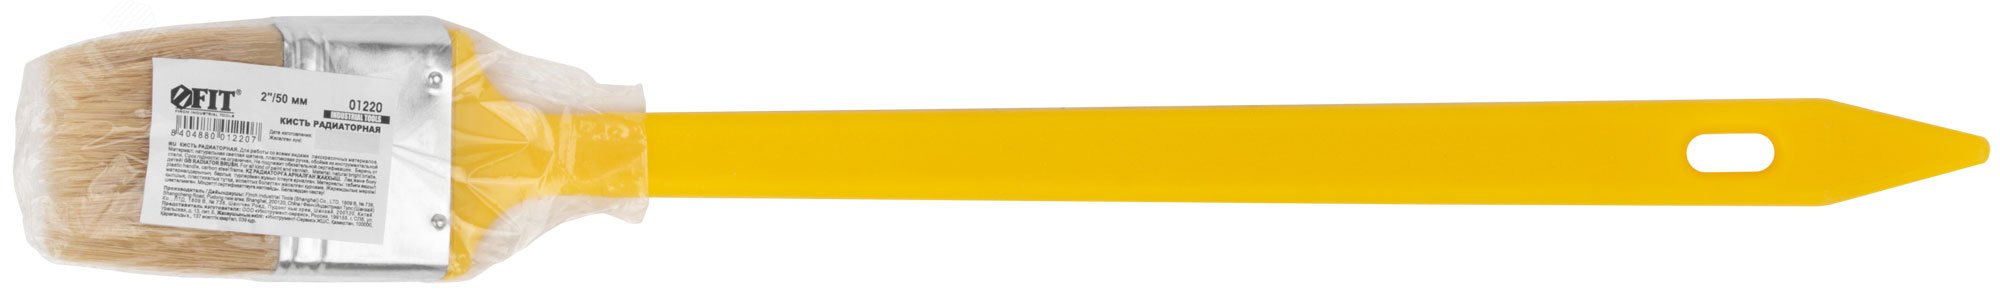 Кисть радиаторная, натуральная светлая щетина, желтая пластиковая ручка 2'' (50 мм) 1220 FIT - превью 3